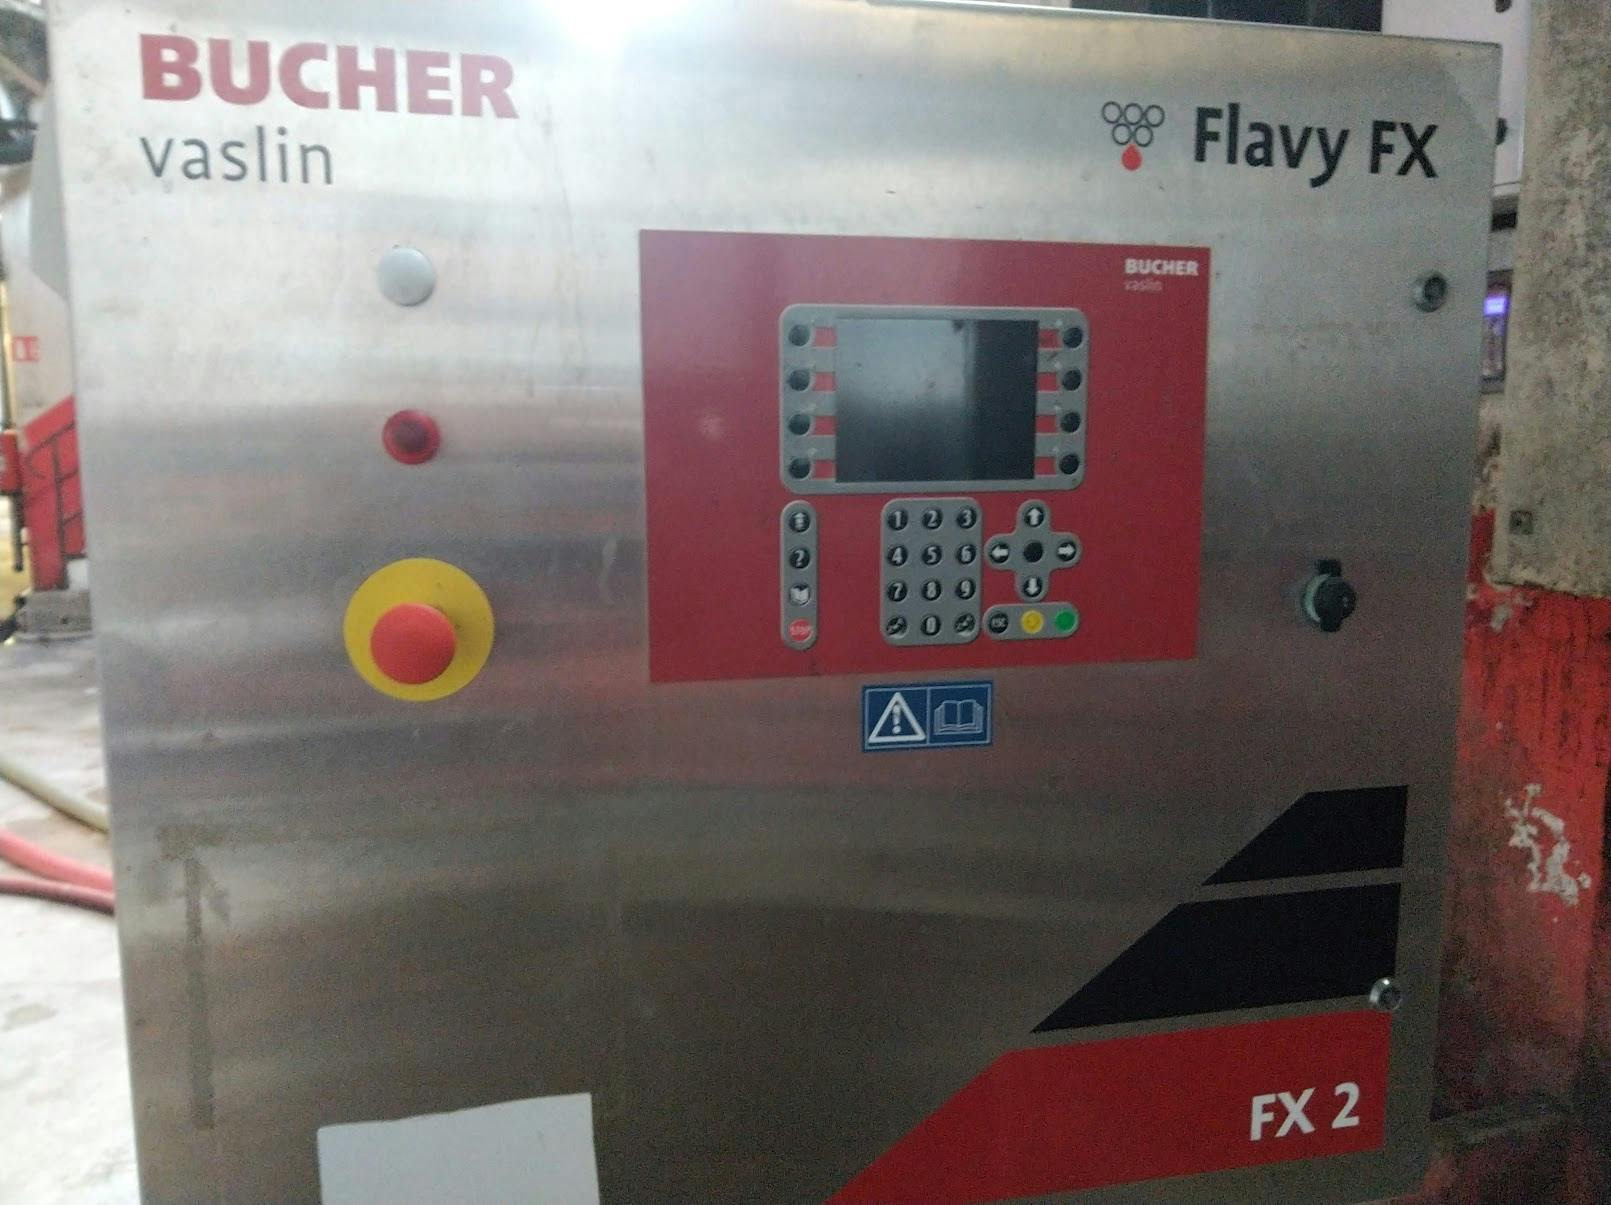 Front view of Bucher Flavy FX – FX2